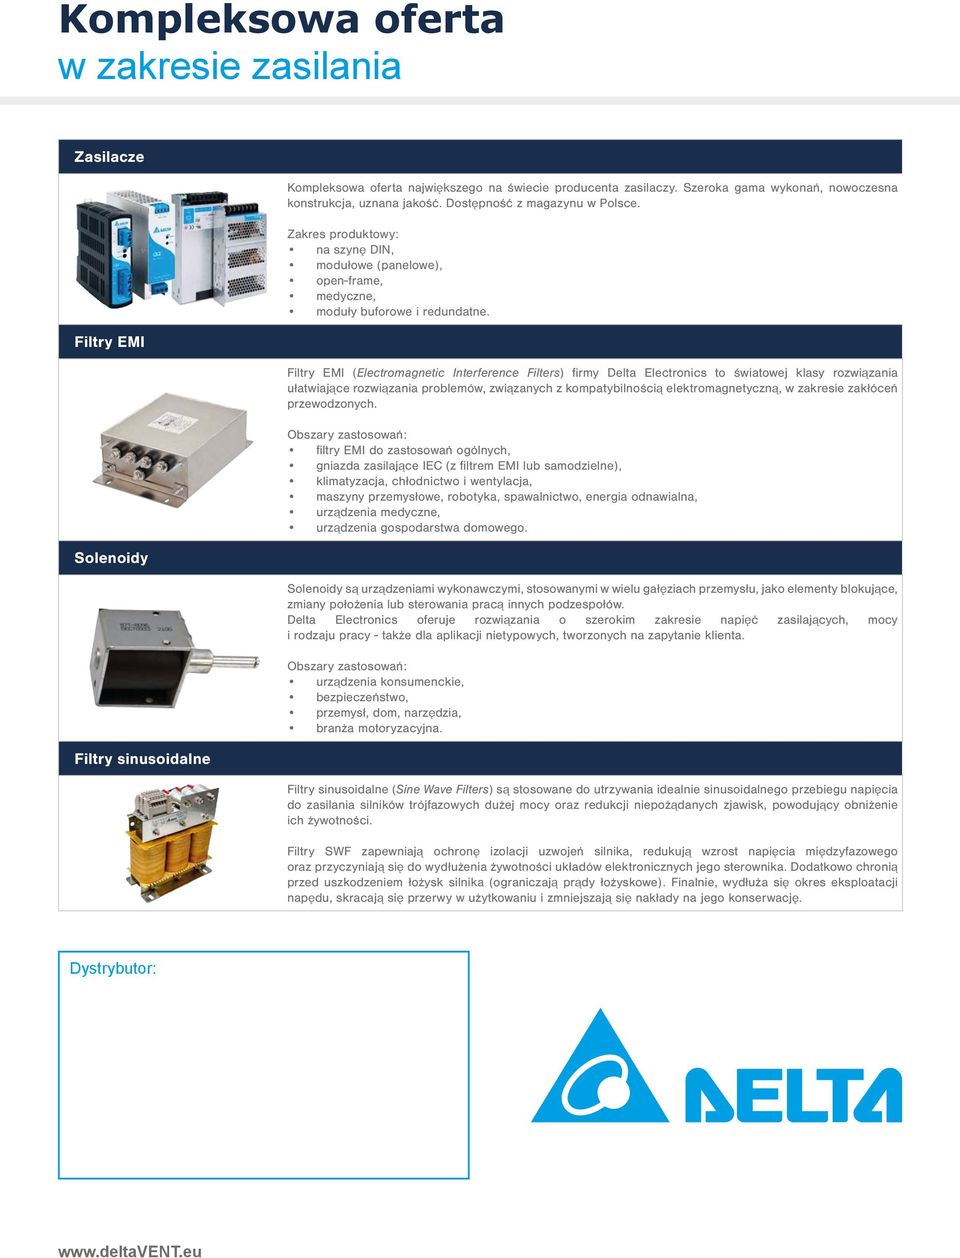 Filtry EMI (Electromagnetic Interference Filters) firmy Delta Electronics to światowej klasy rozwiązania ułatwiające rozwiązania problemów, związanych z kompatybilnością elektromagnetyczną, w